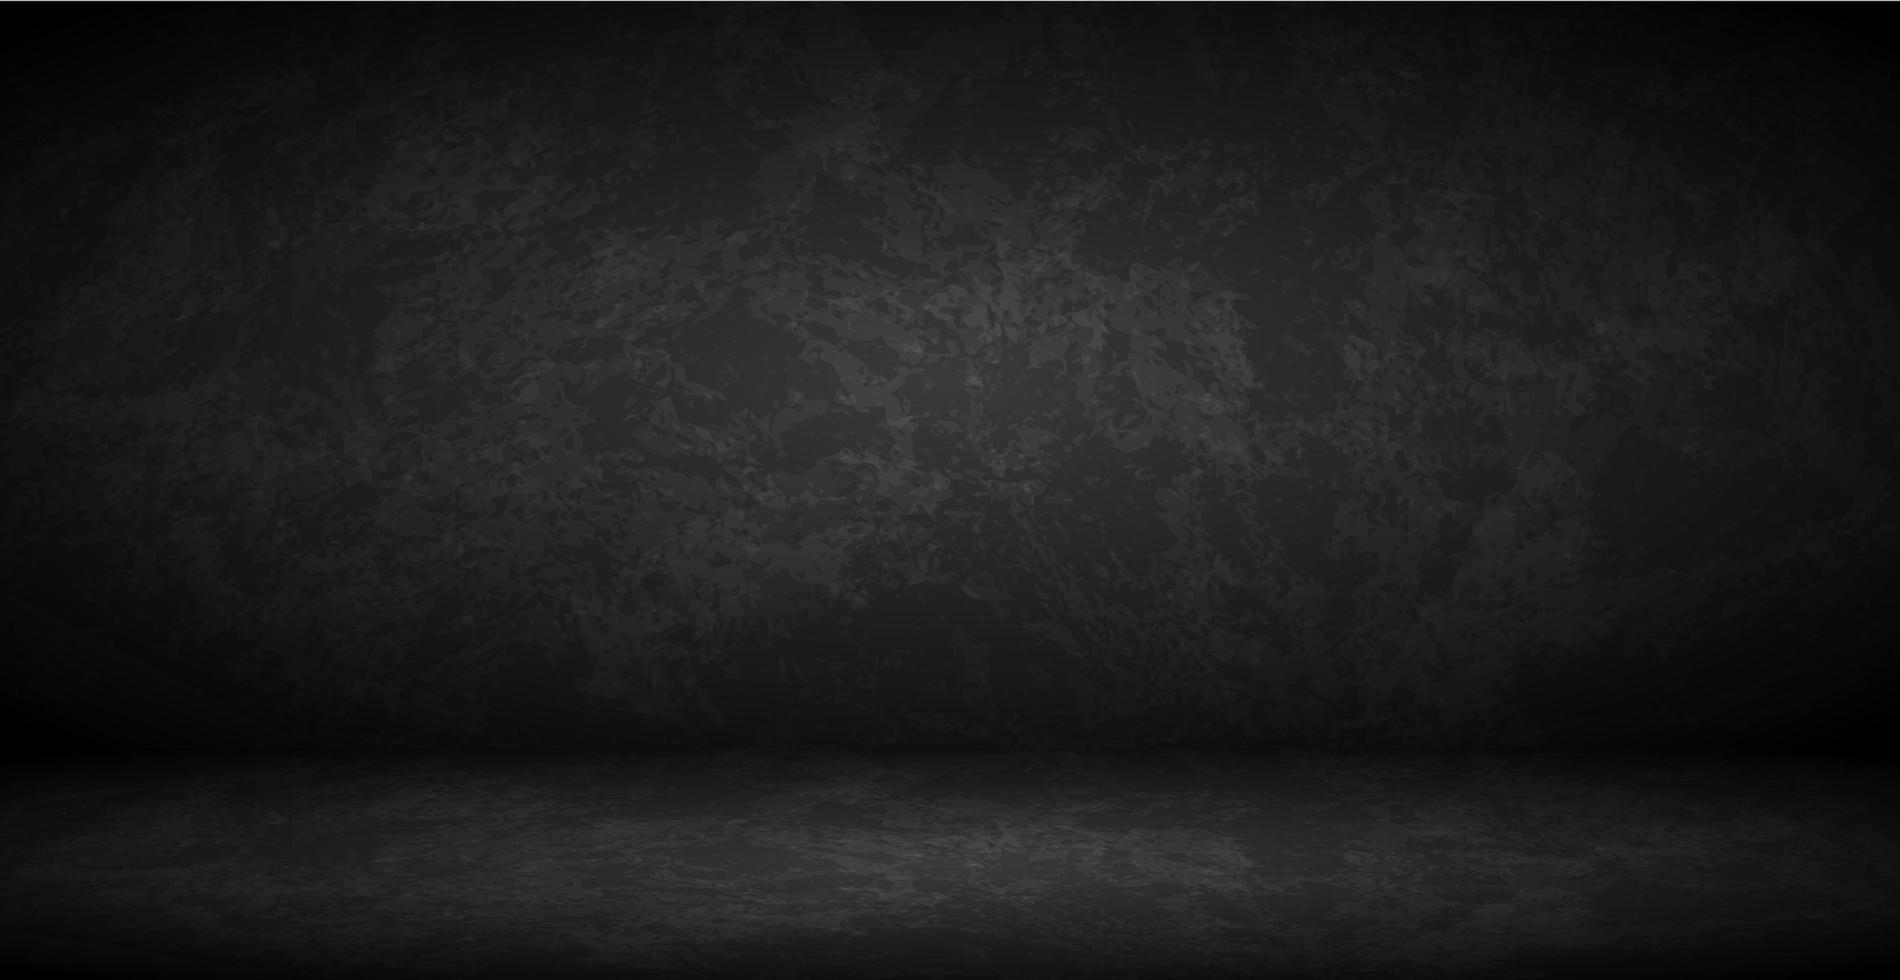 Schwarze Wand im dunklen Studio, Webhintergrundschablone - Vektor